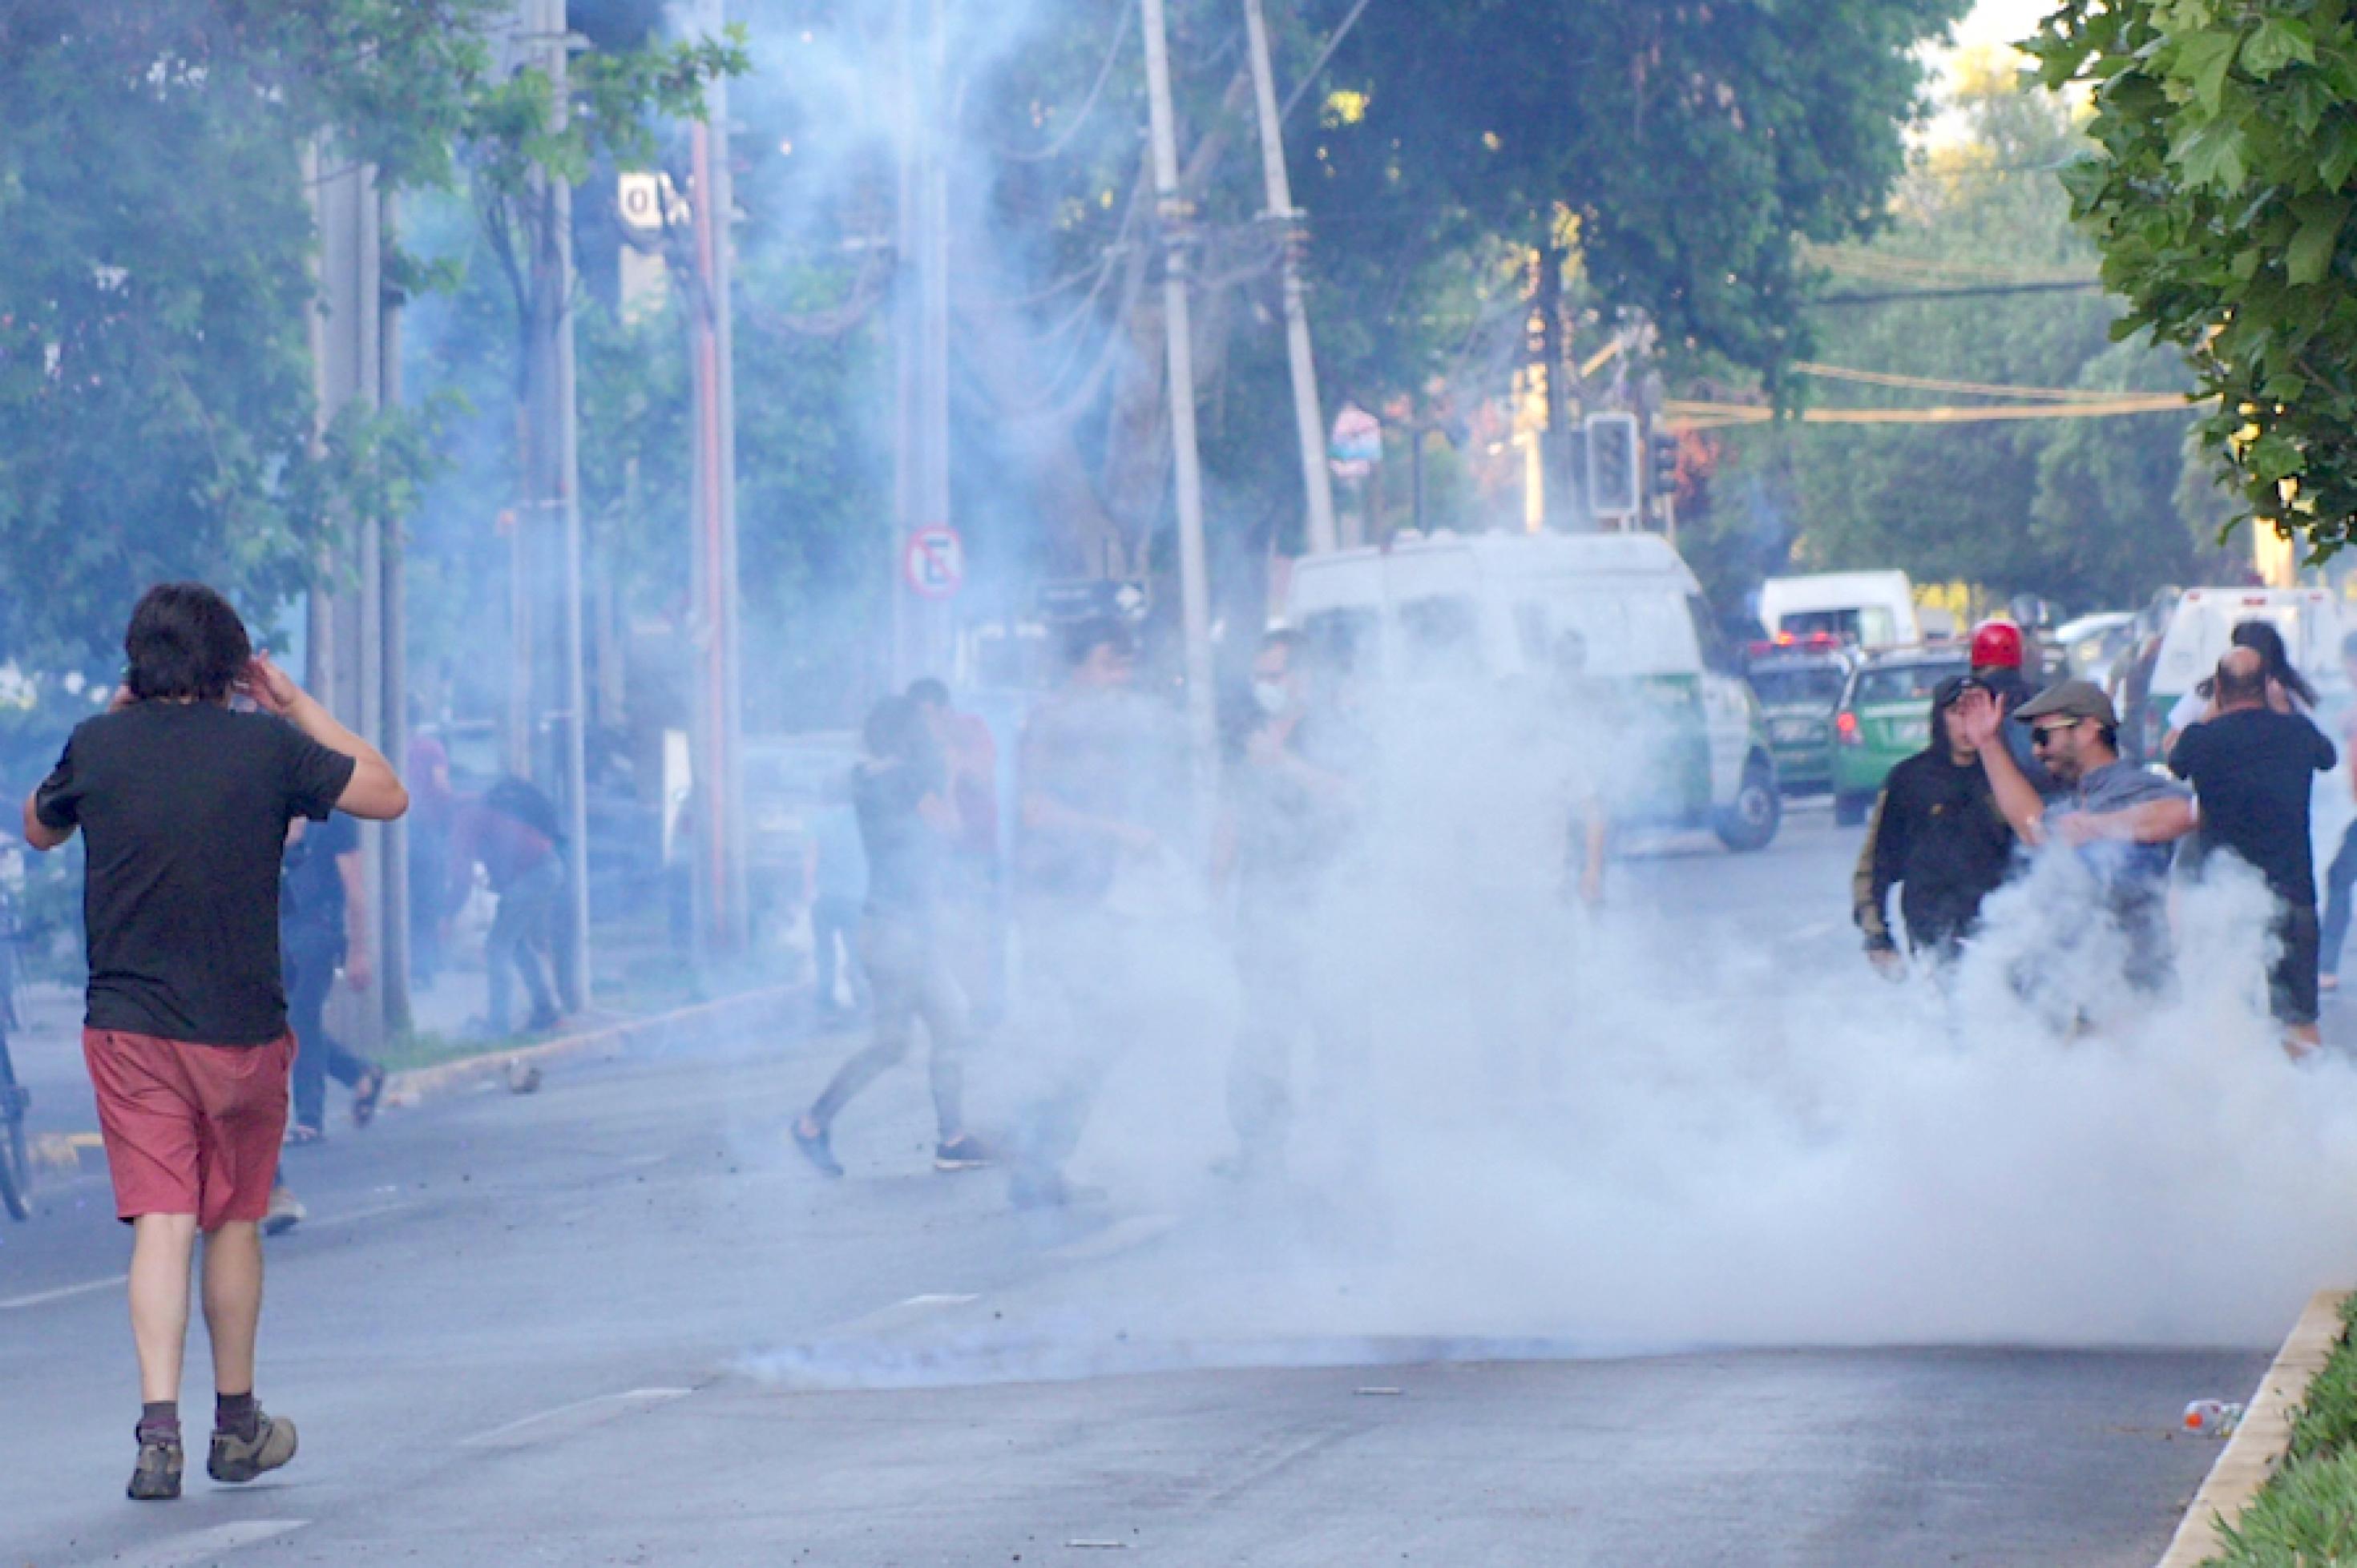 Am Rande von Protesten in Santiago de Chile fliegen Rauchbomben auf die Straße, ihm Hintergrund sind Einsatzfahrzeuge der chilenischen Polizei zu sehen.